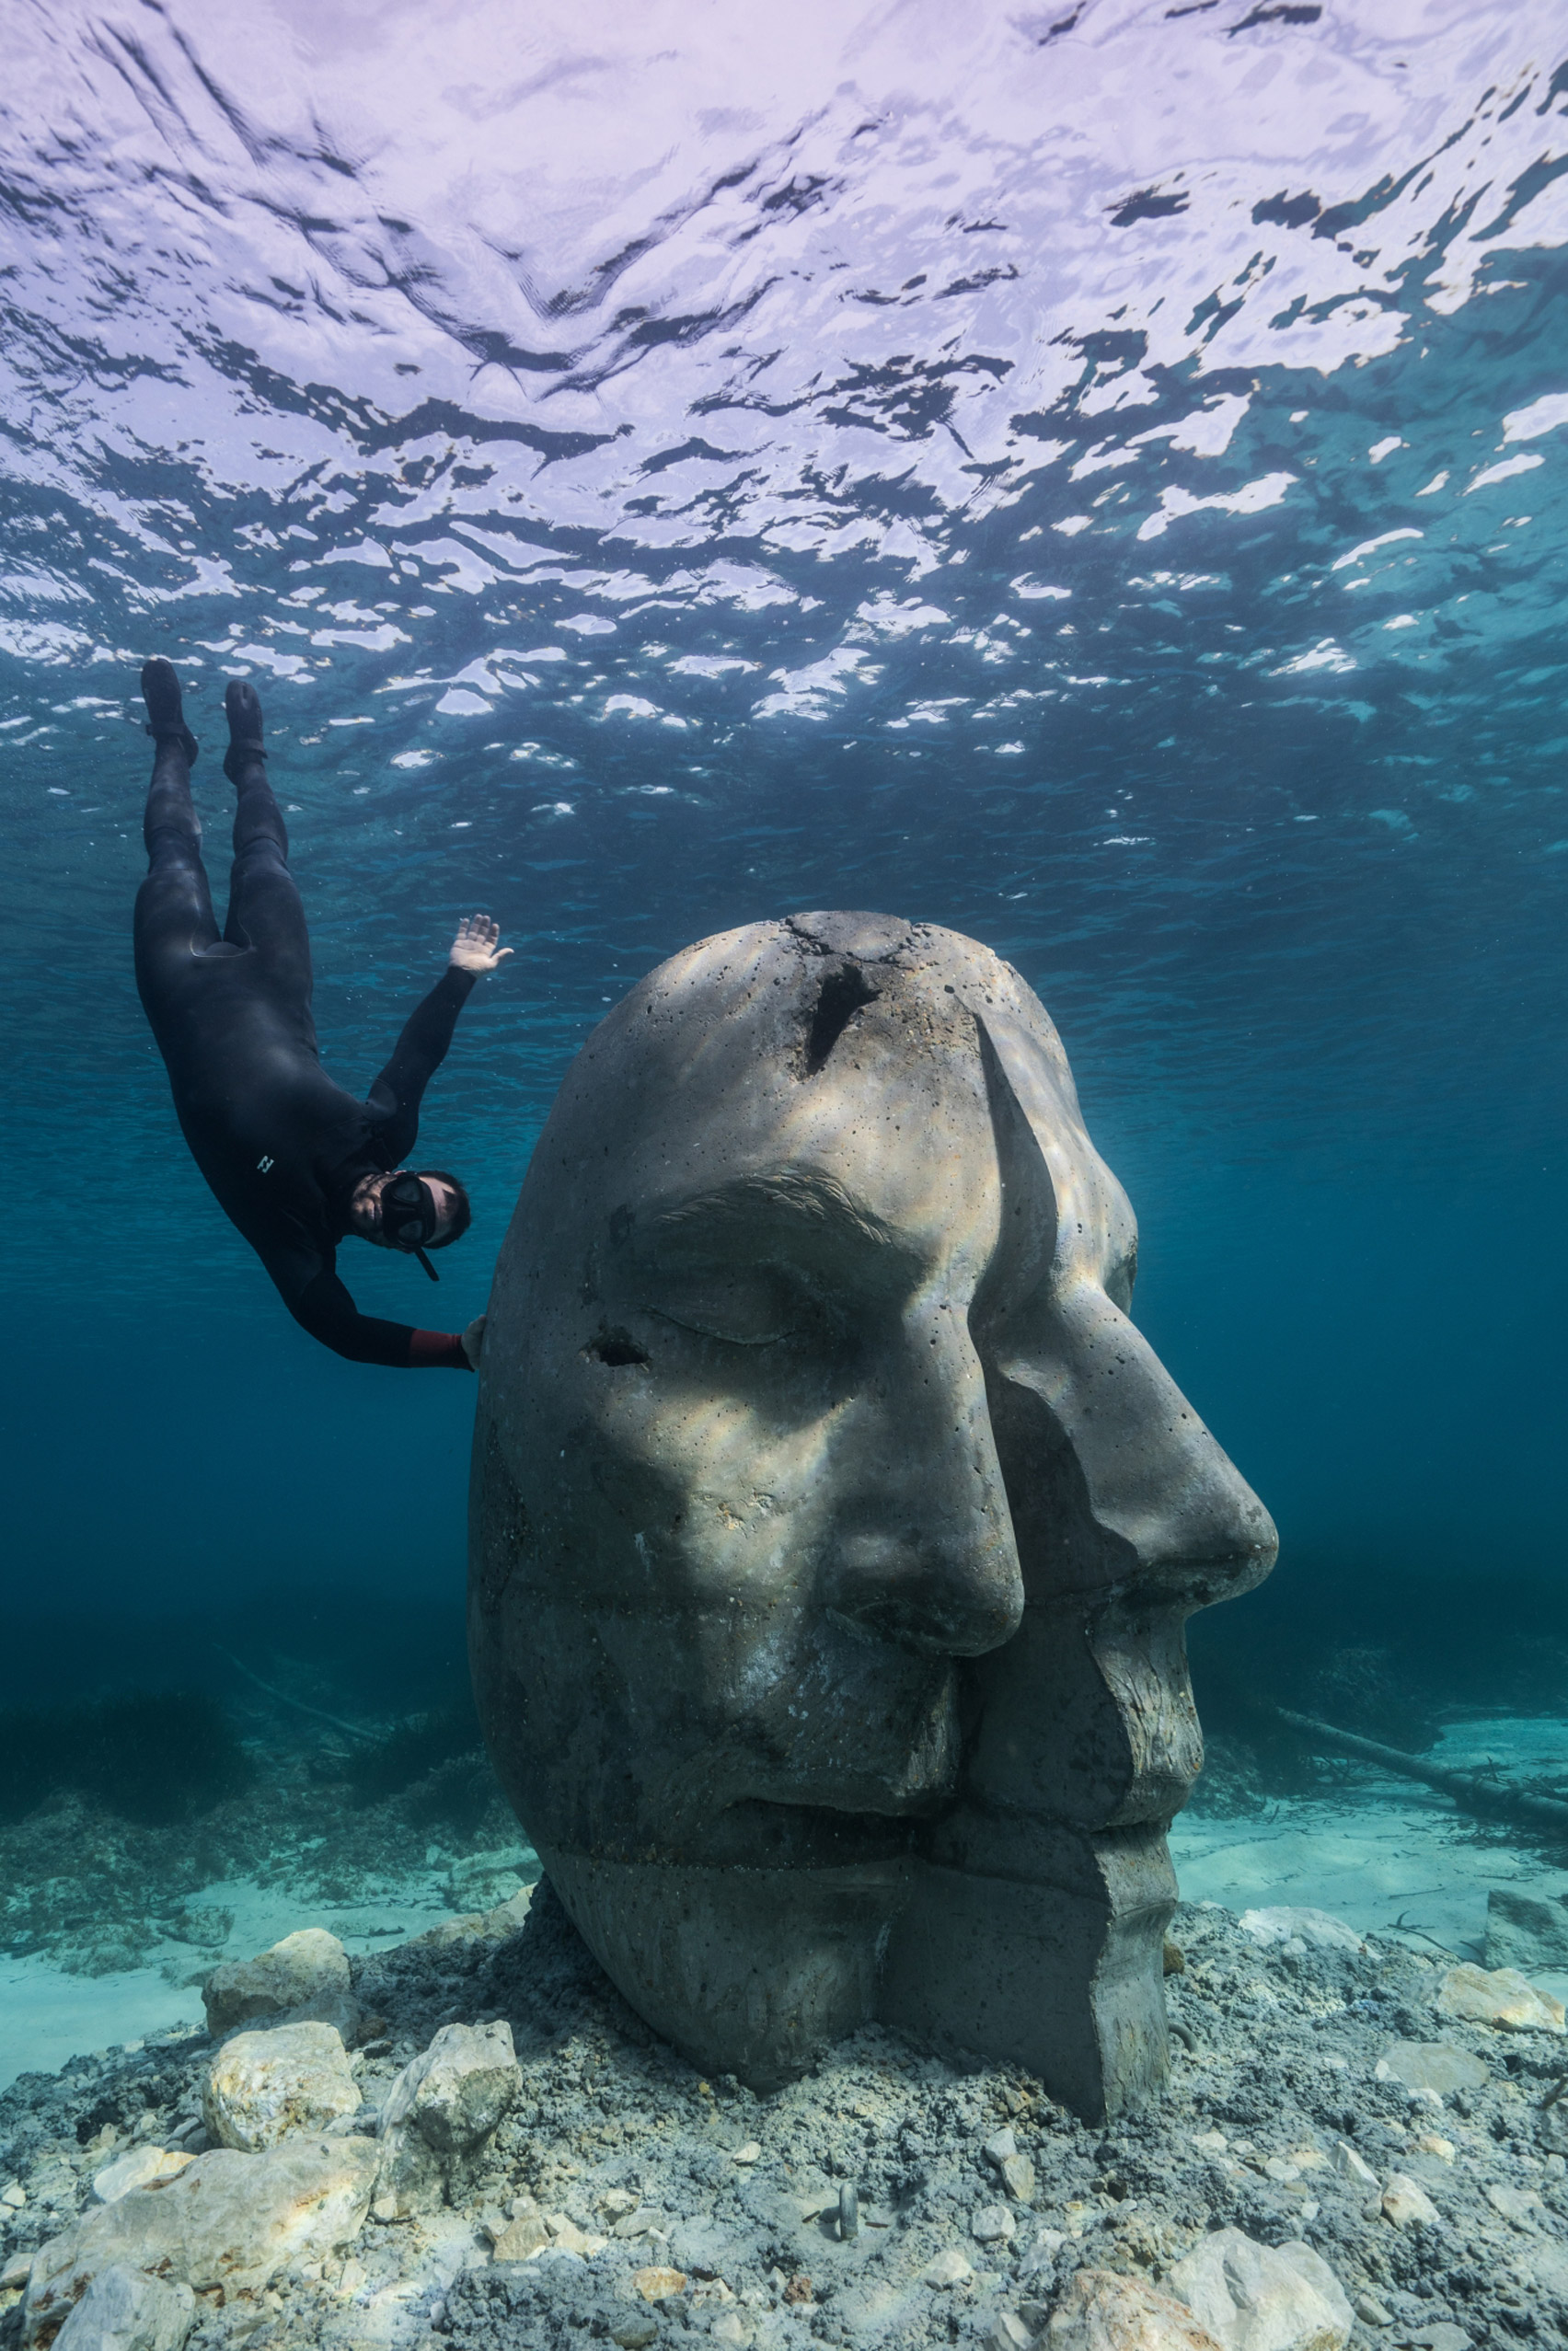 A snorkeler alongside an underwater sculpture